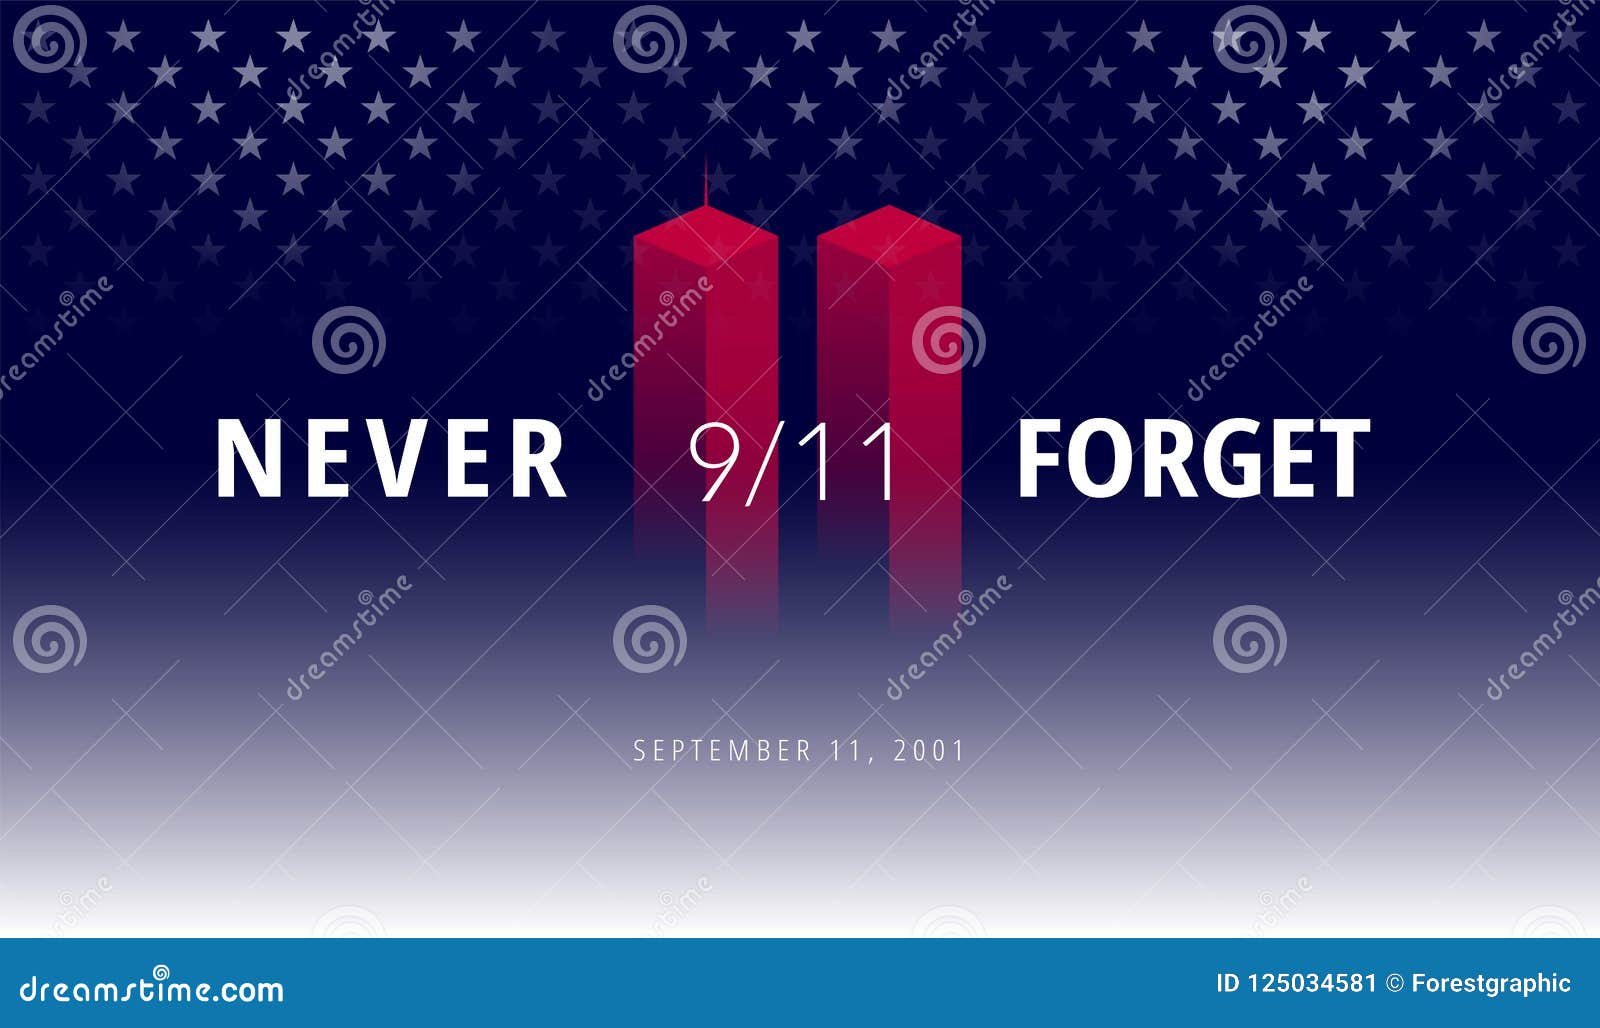 9/11 usa never forget september 11, 2001.  conceptual illu